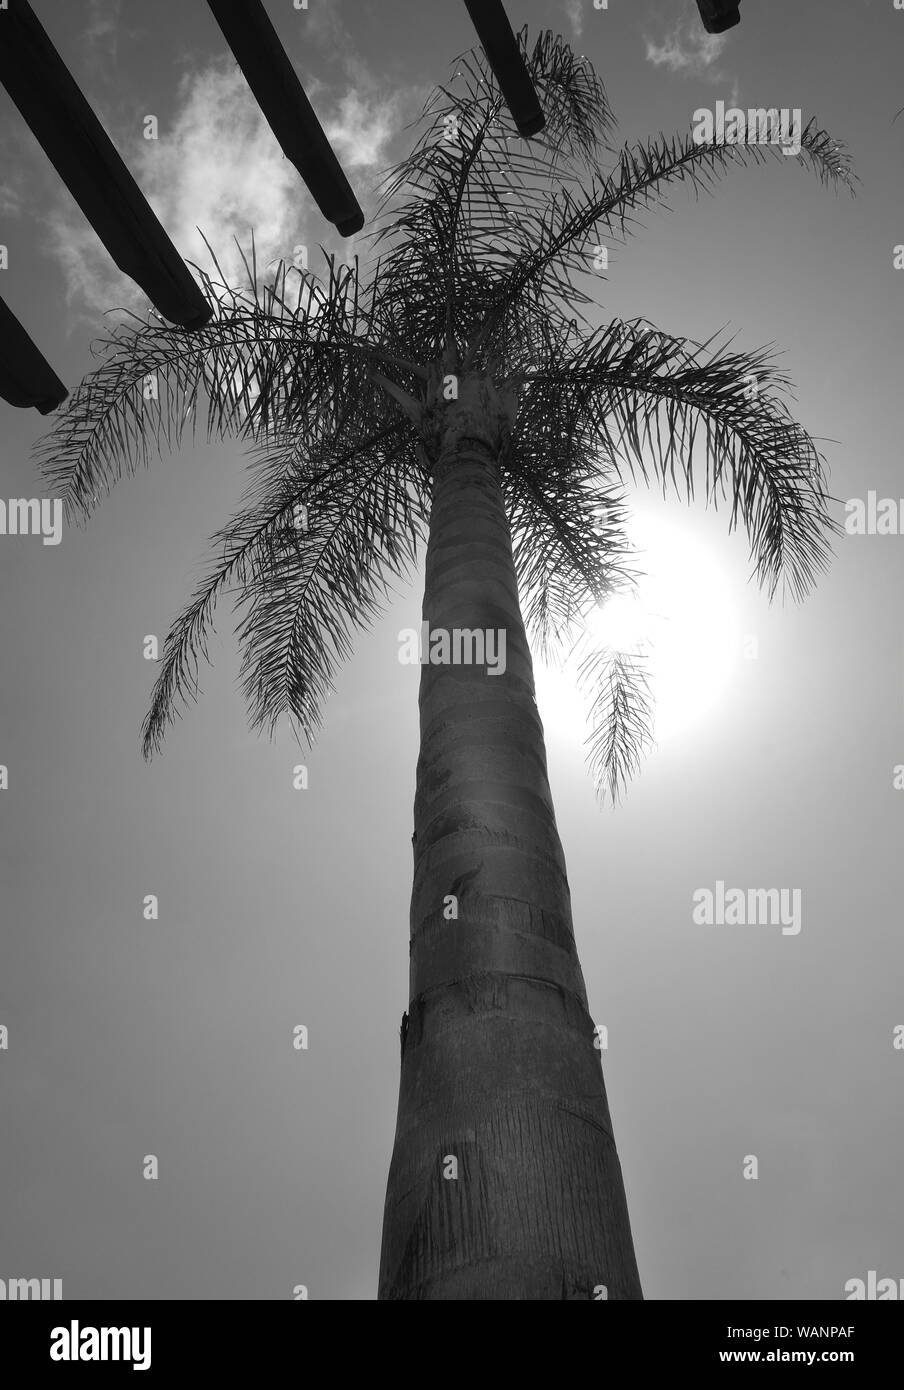 Palm Tree, niedrige View Point Sie suchen den Stamm der Palme oben auf dem Baum und Himmel mit der Sonne hinter der schwarzen und weißen photog Stockfoto